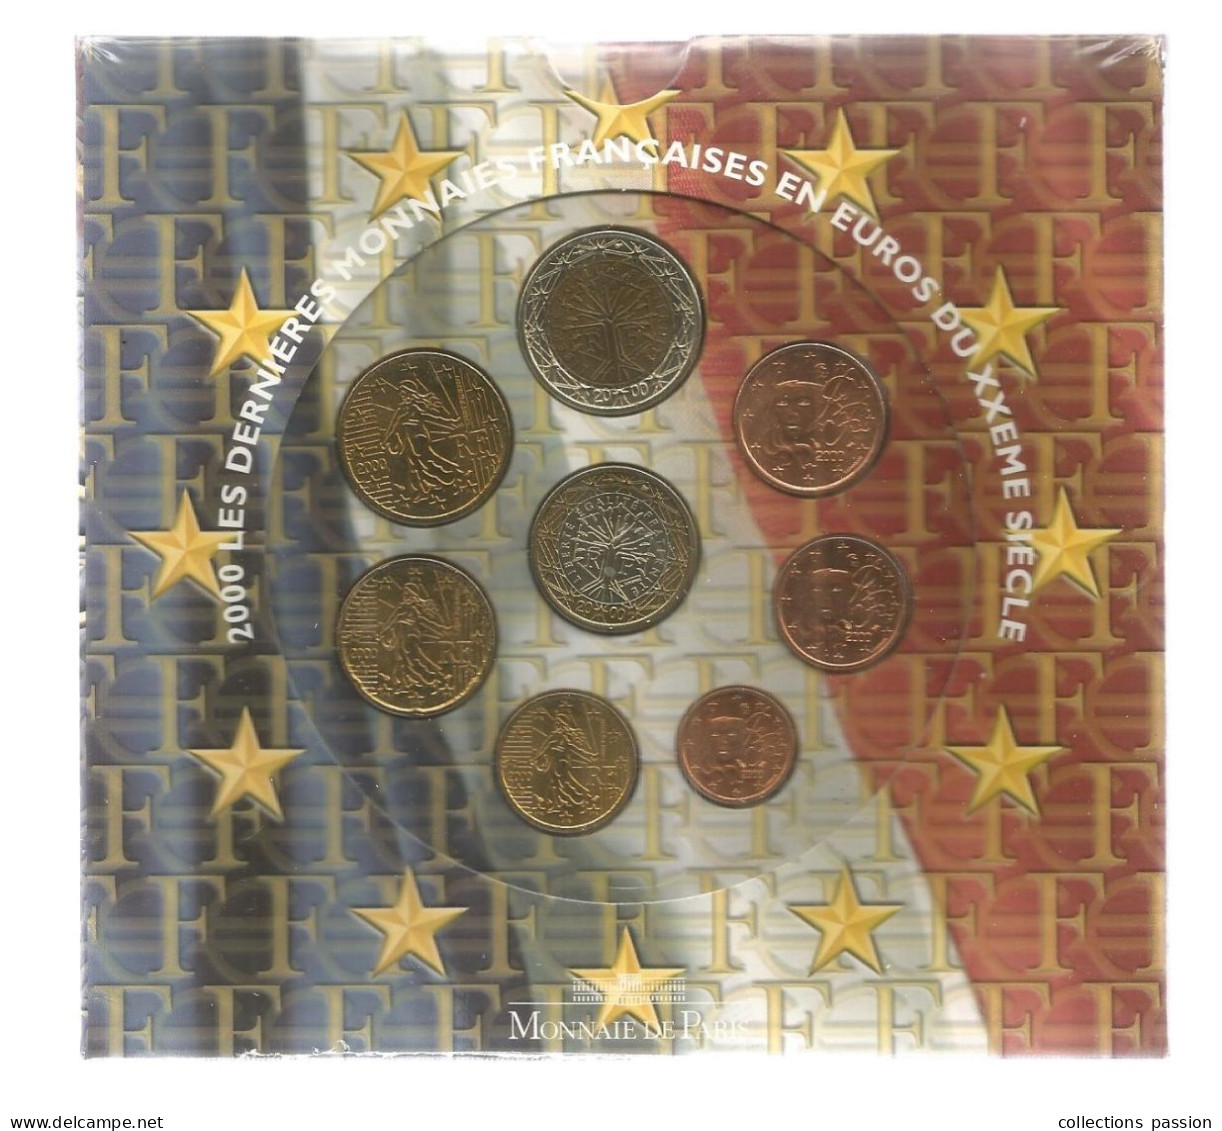 Monnaie, Coffret, Emballage D'origine Scéllé, EURO France, Brillant Universel , Série Officielle, 2000, Frais Fr 3.50 E - Frankreich